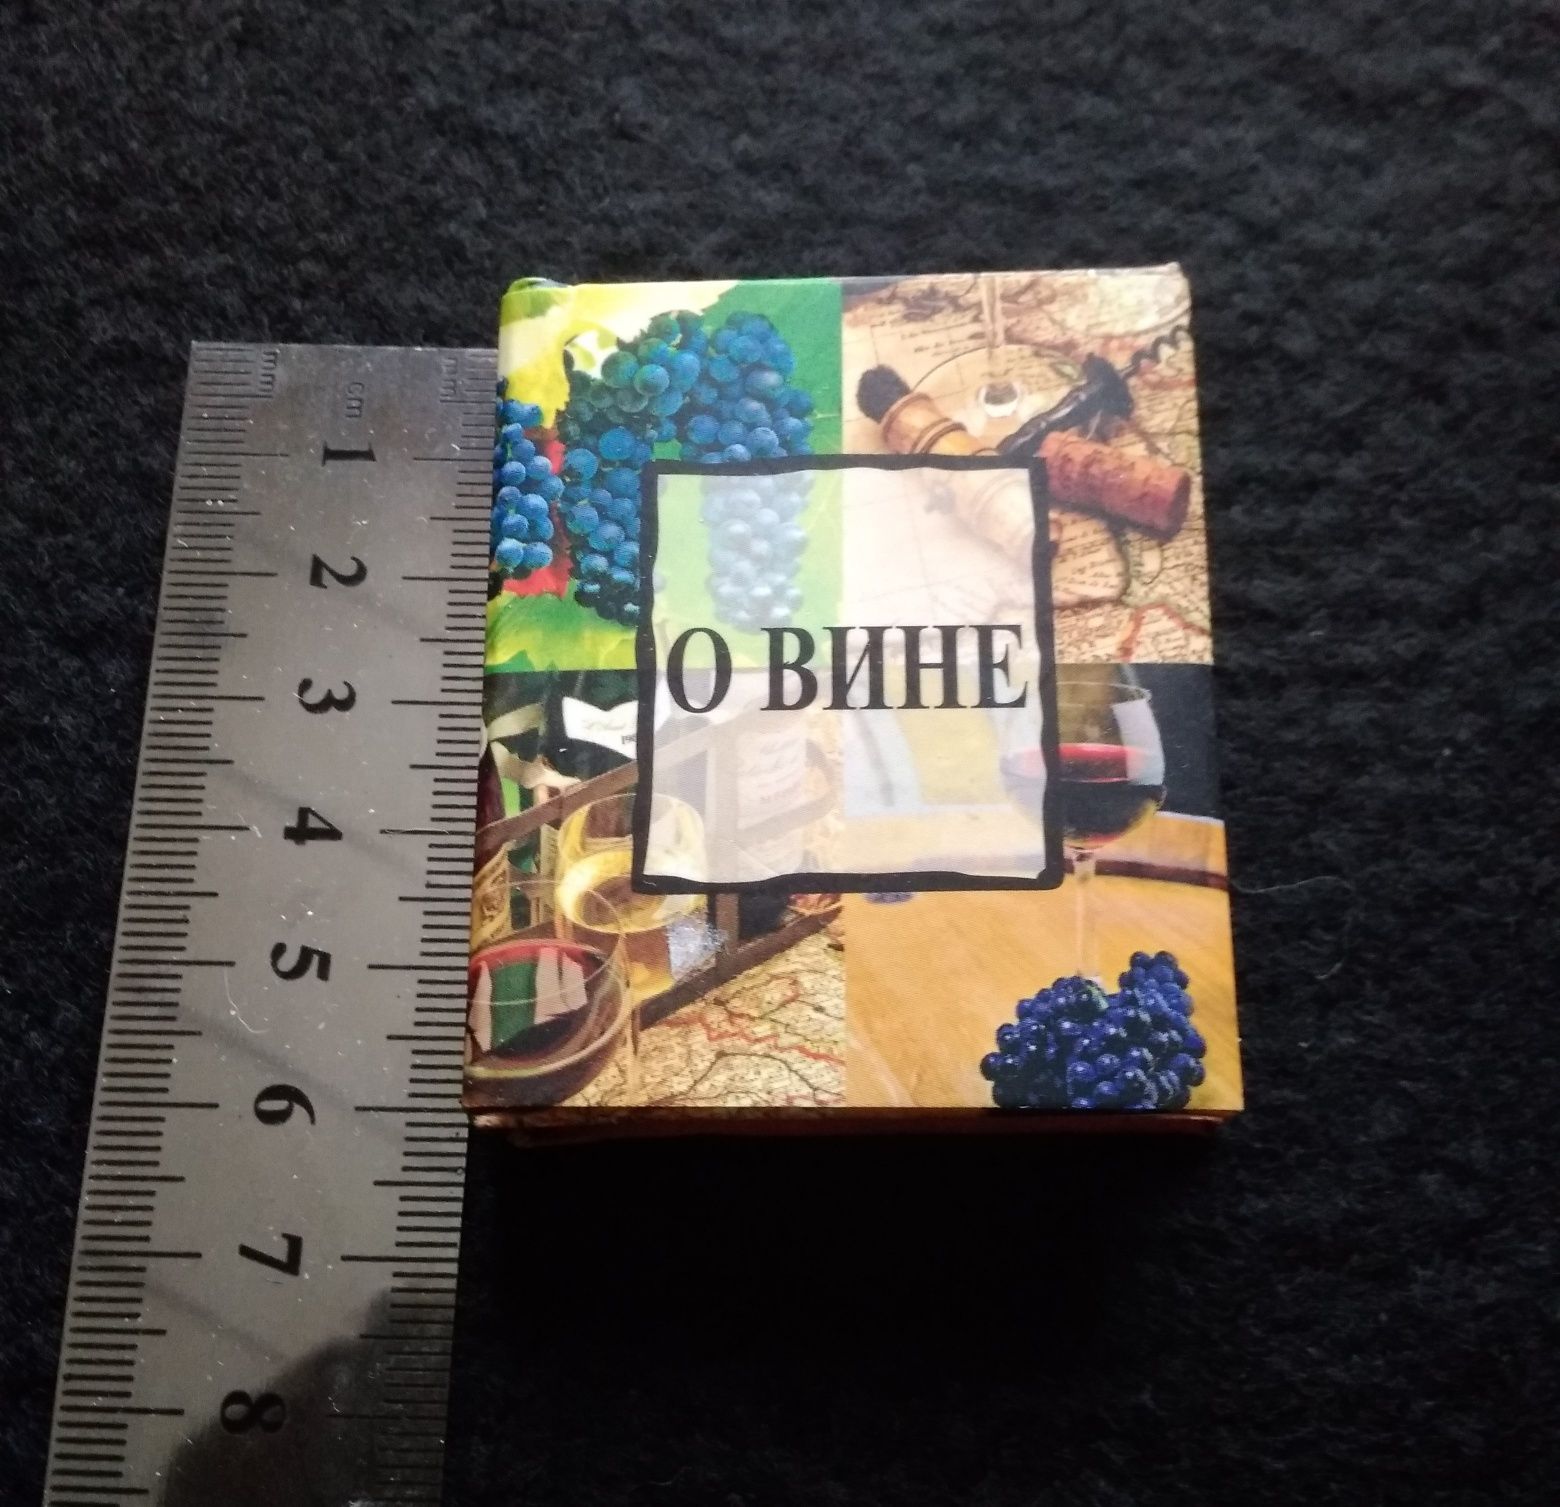 Сувенирная маленькая книга афоризмов о вине,Англия. Размер: 6см × 5см.